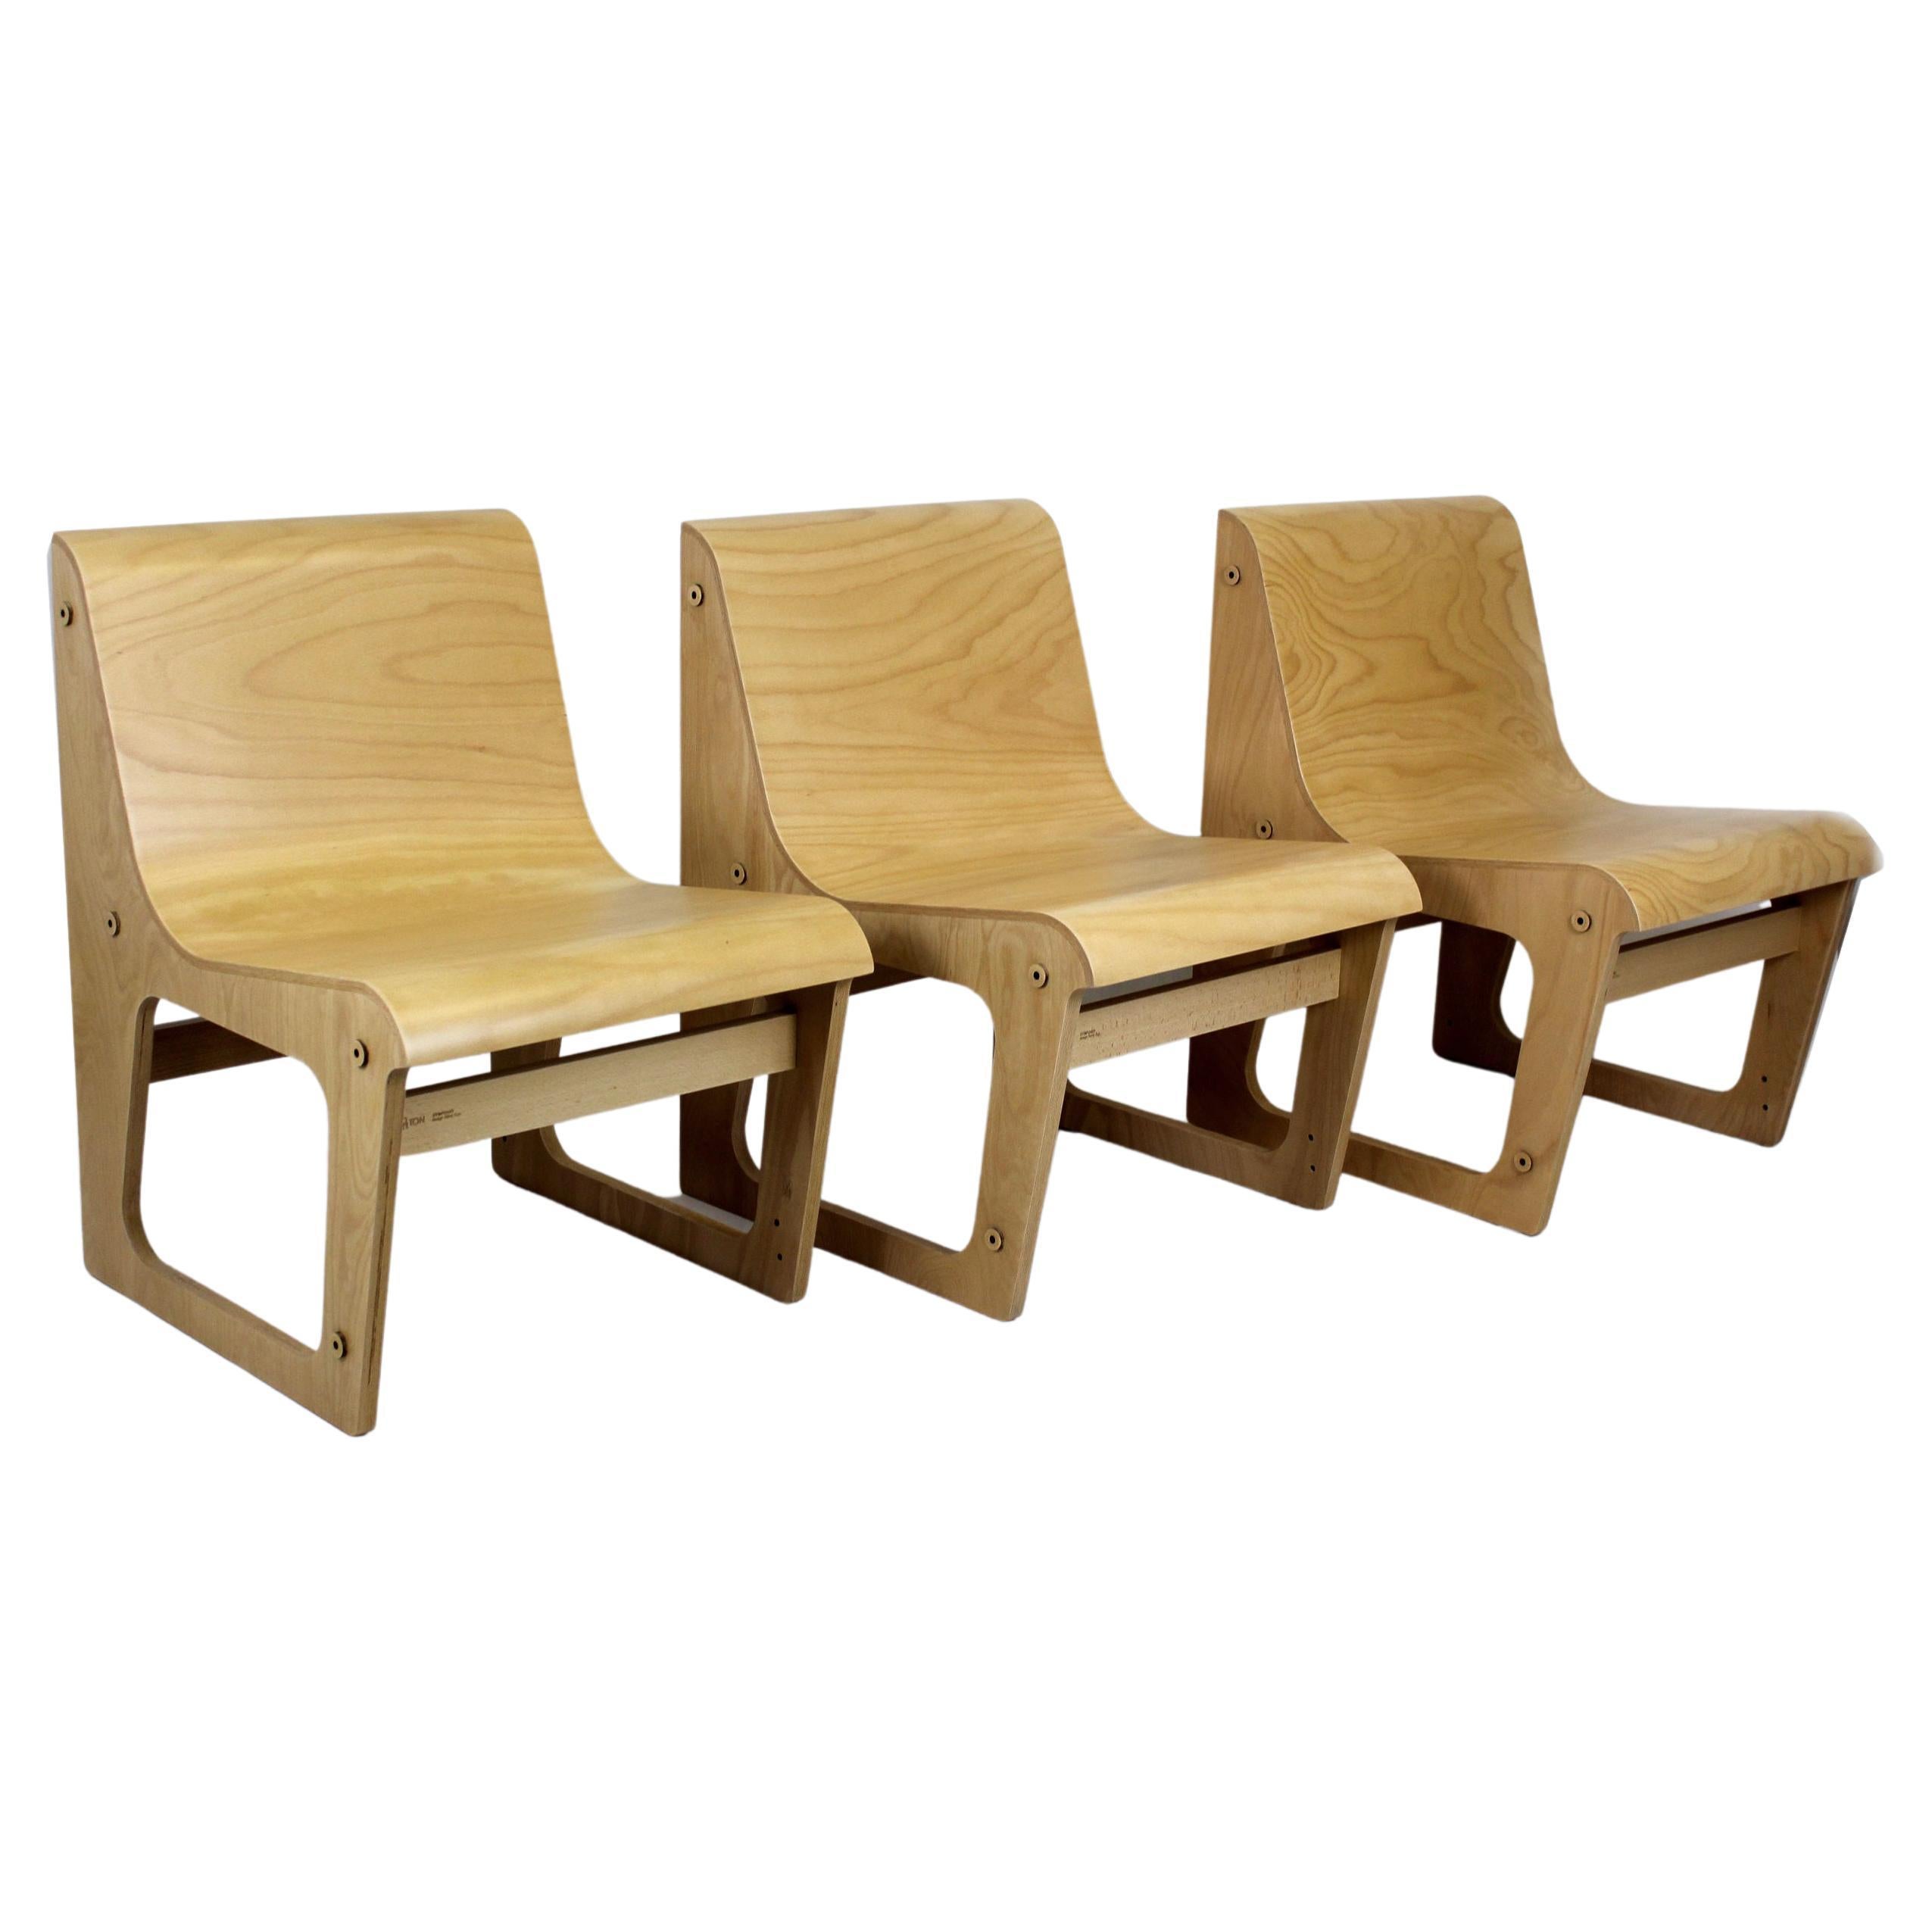 Symposio Bank / Stühle aus Buchensperrholz von Ren ulc für Ton, 2010er Jahre